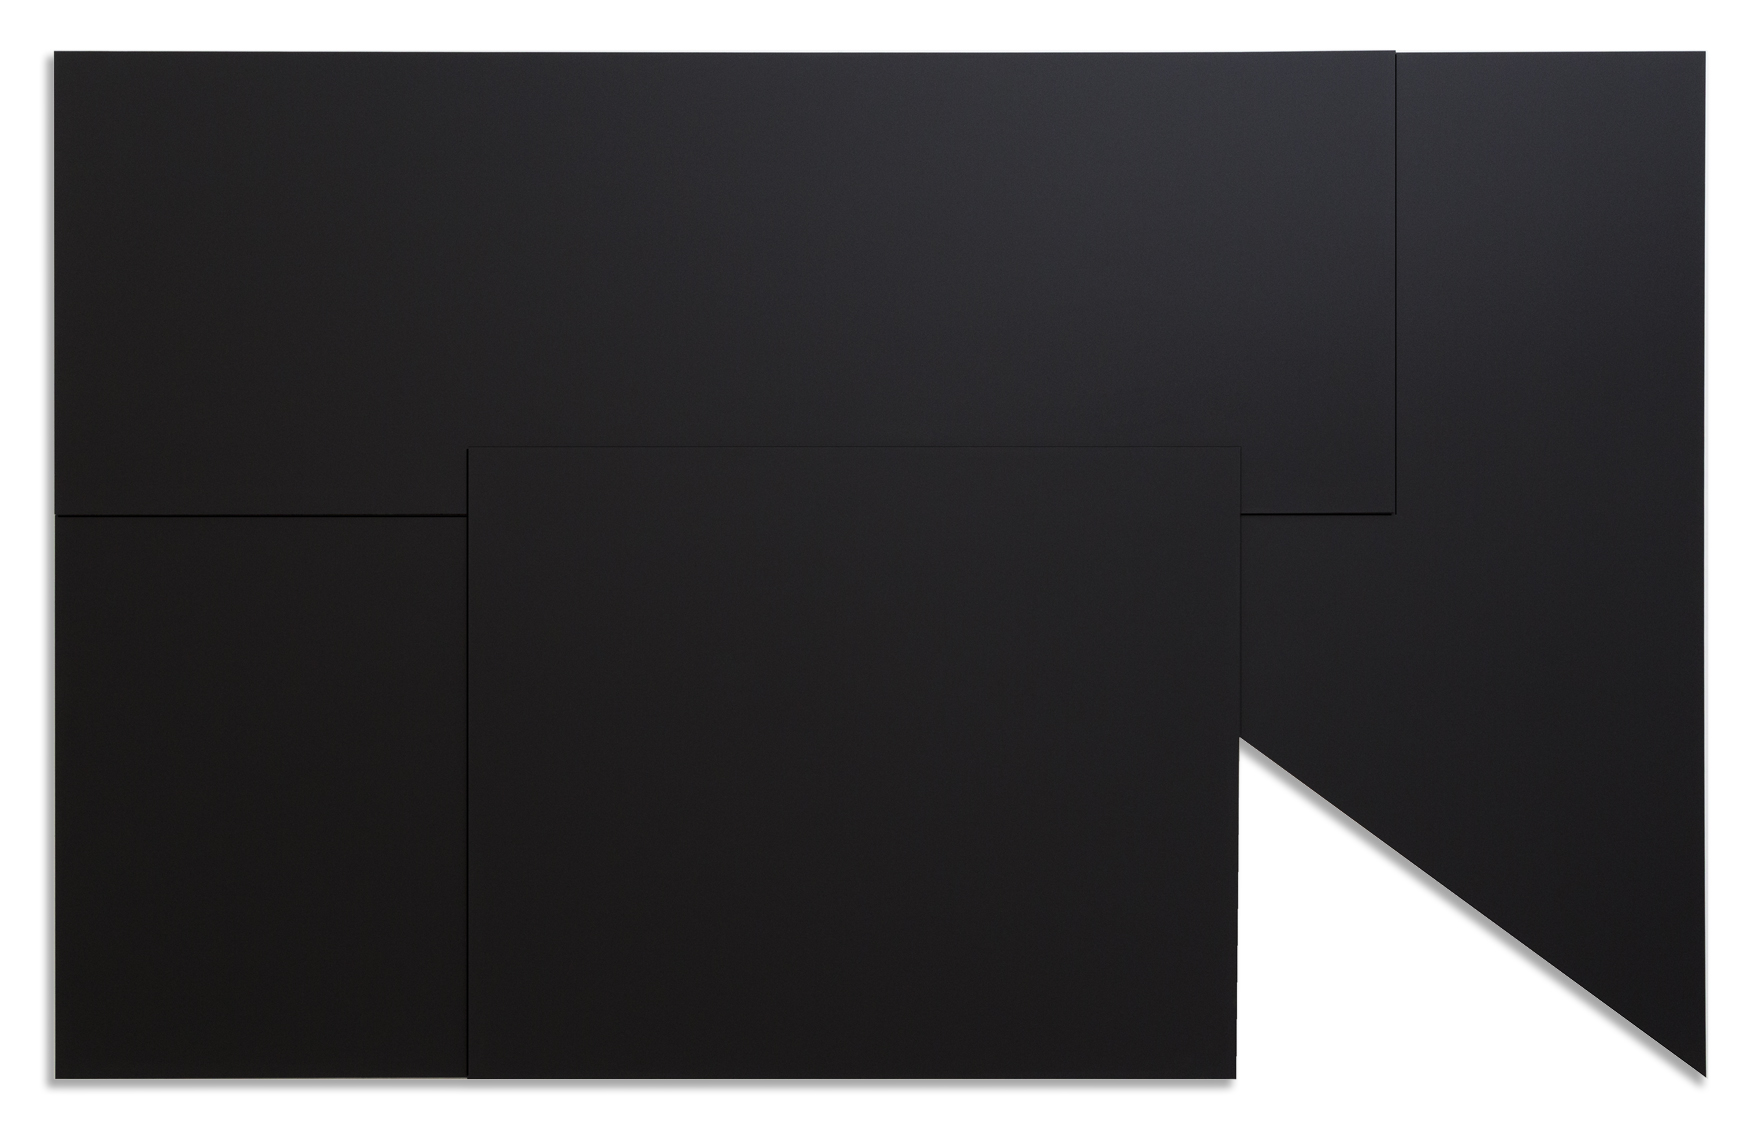  Black Deconstruction I, 2017  NANO on Aluminum  79” x 126”    Deconstrucción Negra l, 2017  Nano sobre Aluminio  200 cm x 320 cm 